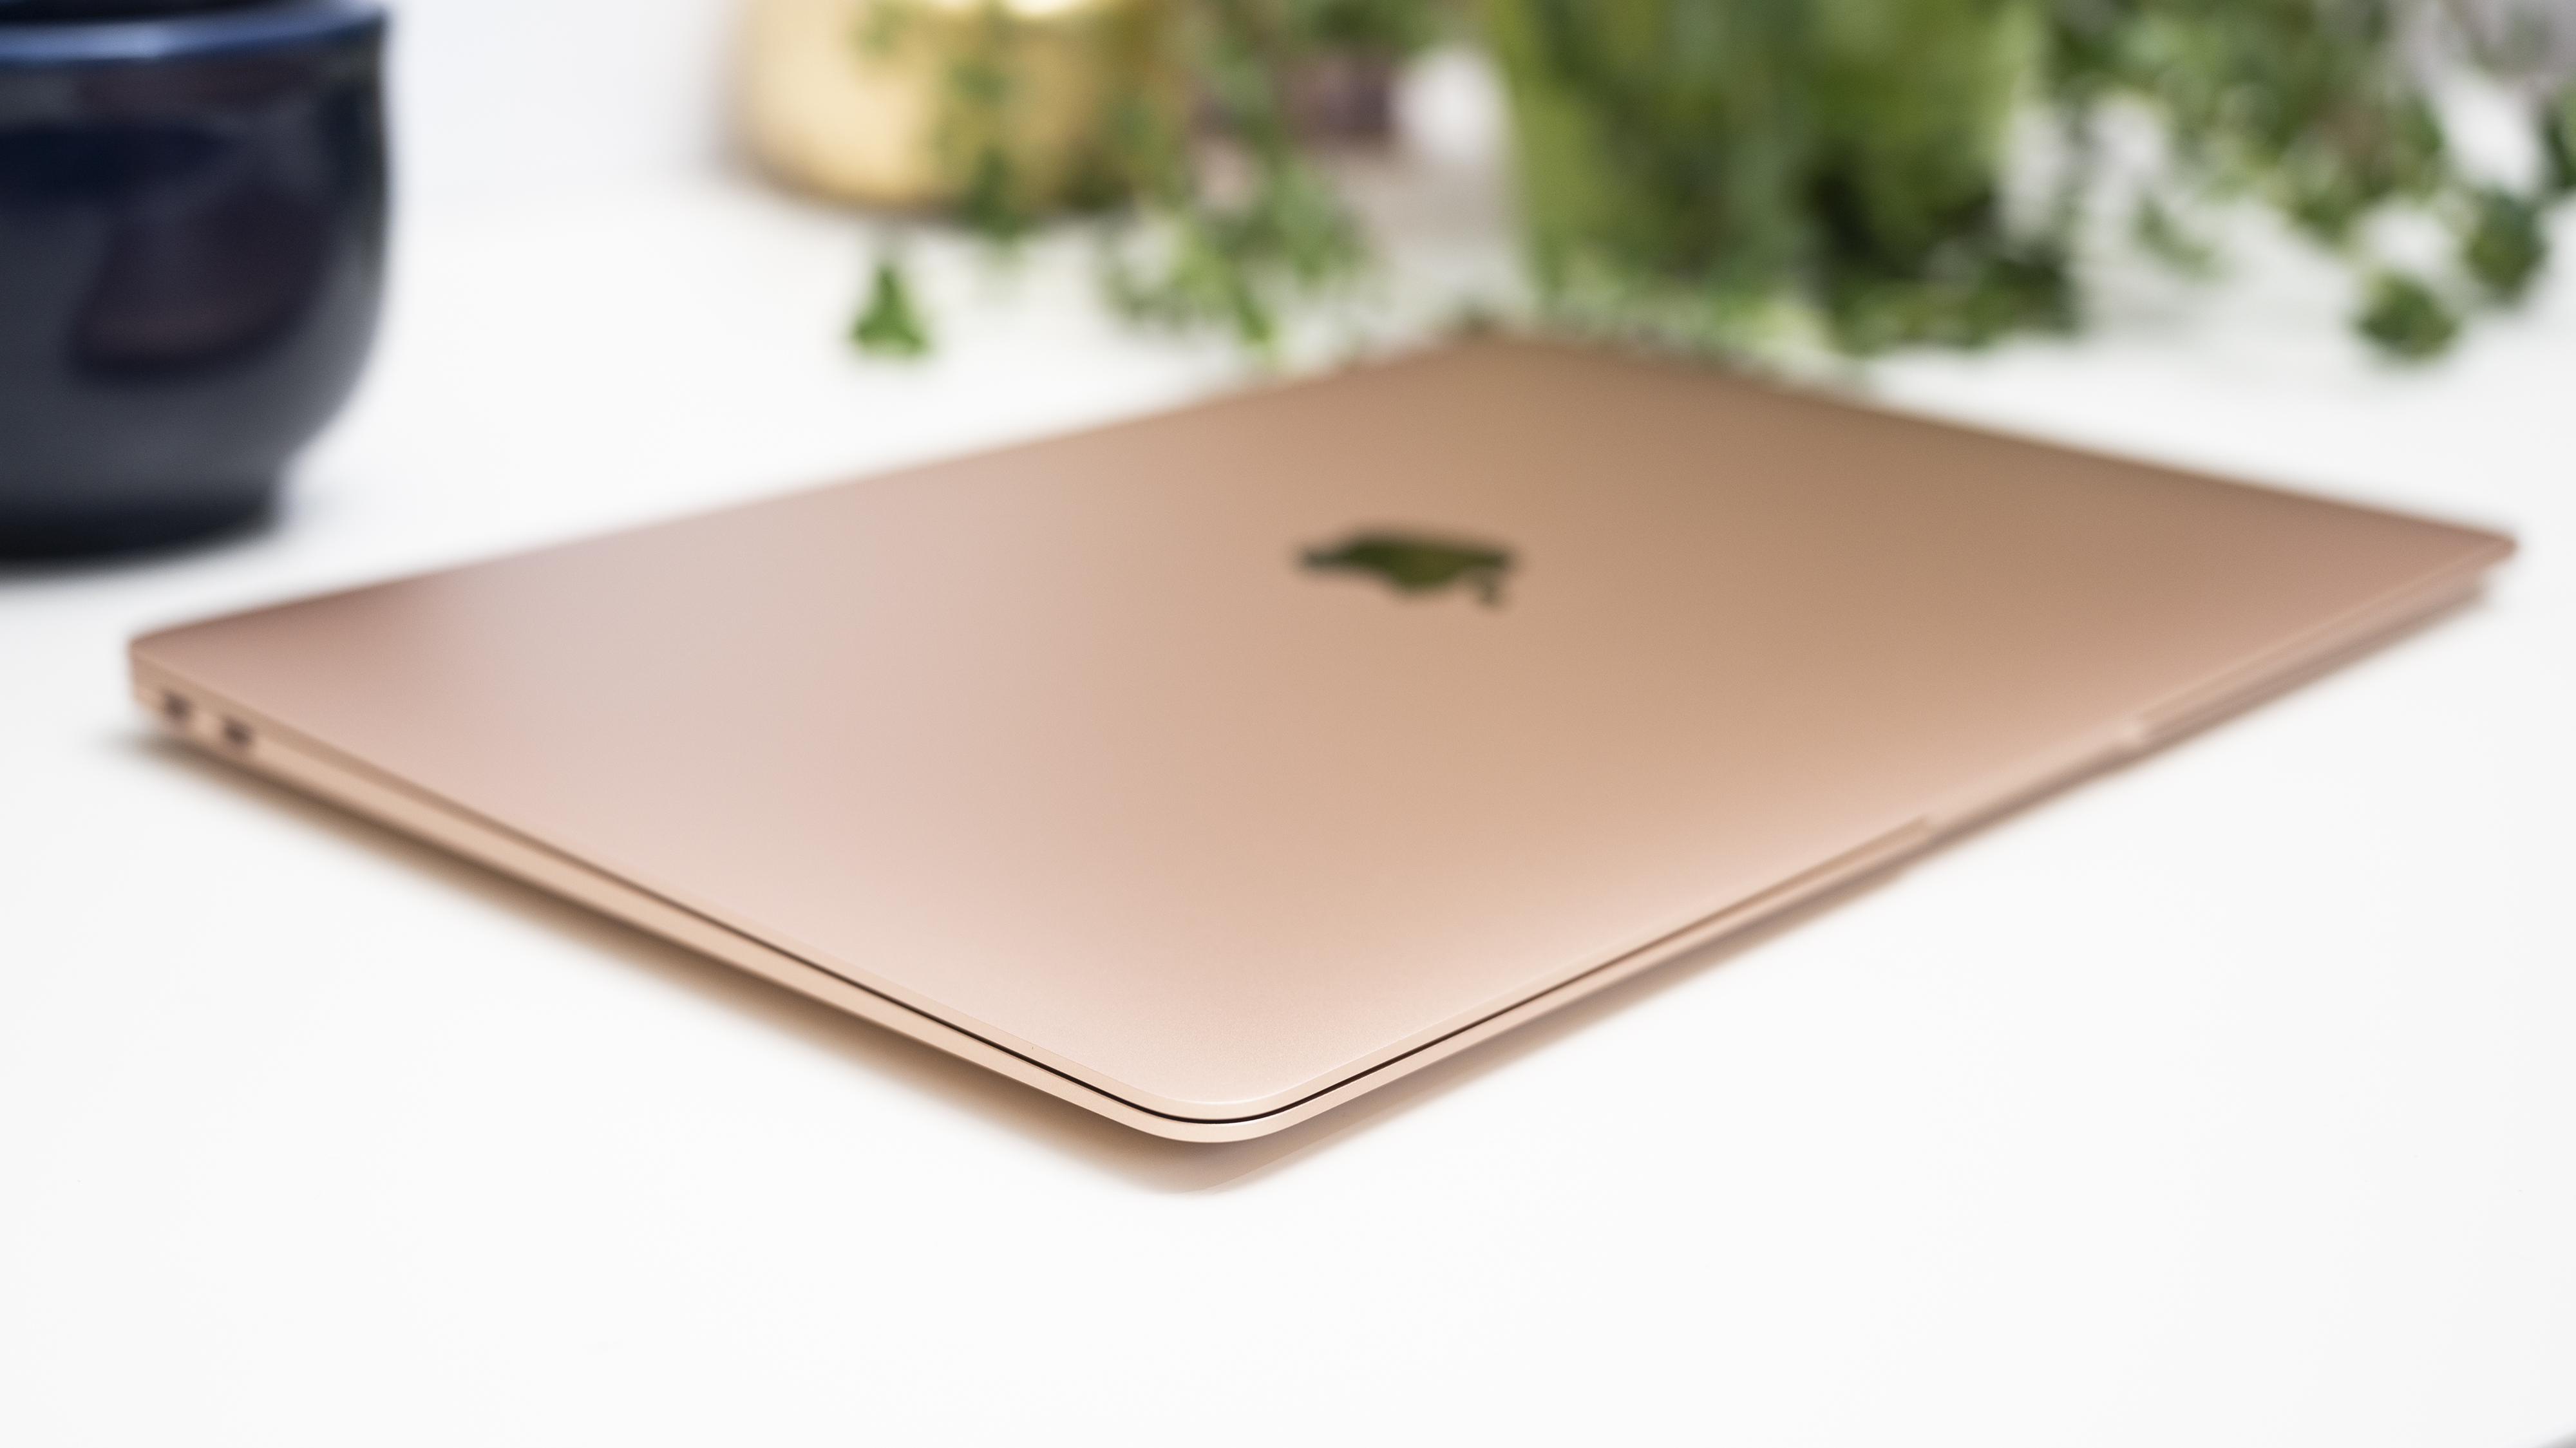 Un MacBook Air M1 di rosa-oro si trova chiuso su una superficie bianca